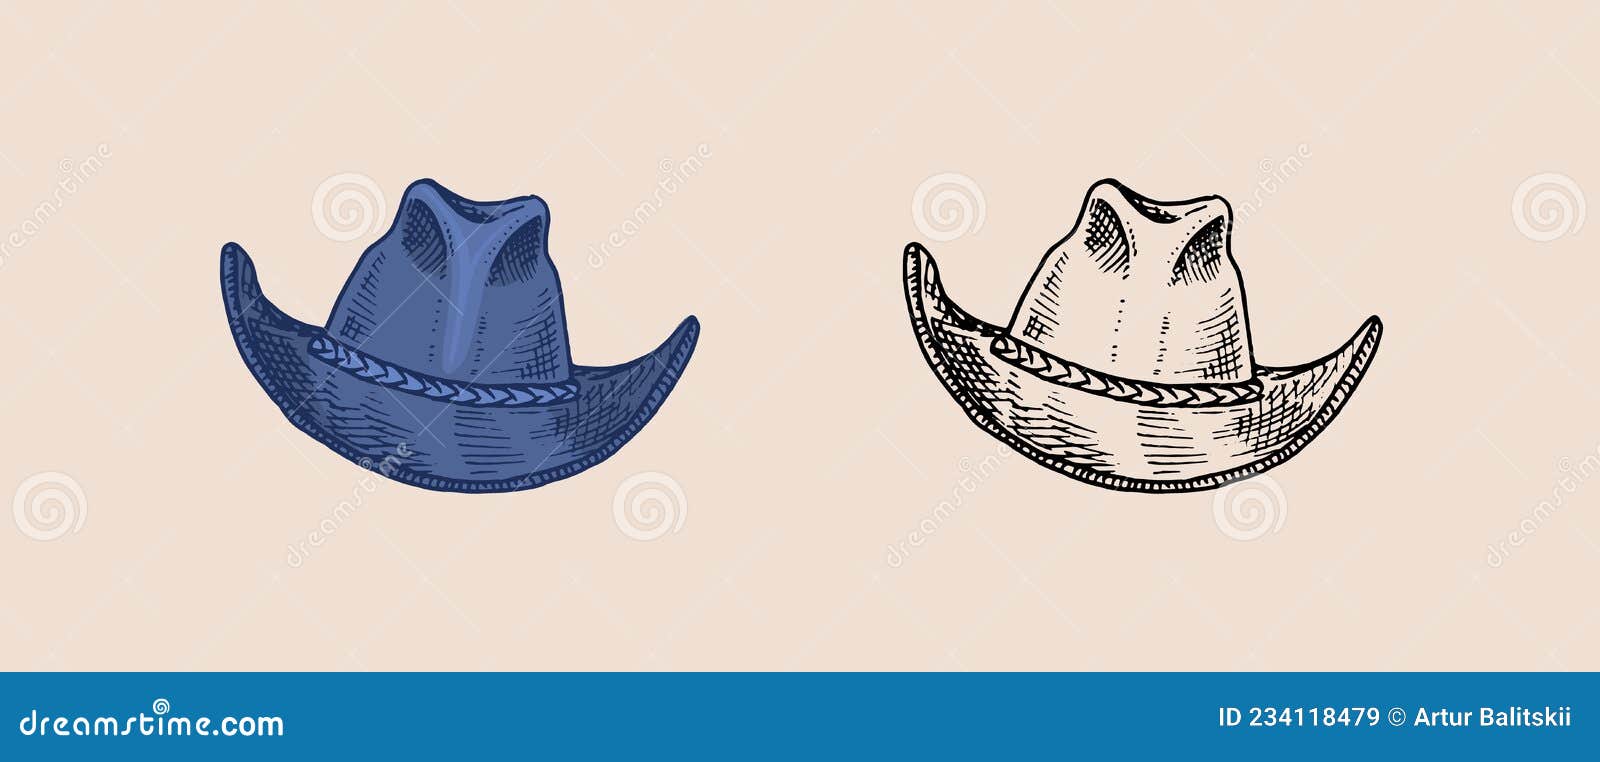 复古的帽子 牛仔 优雅的男人 复古时装 英语风格 手绘向量例证 插画包括有英语 例证